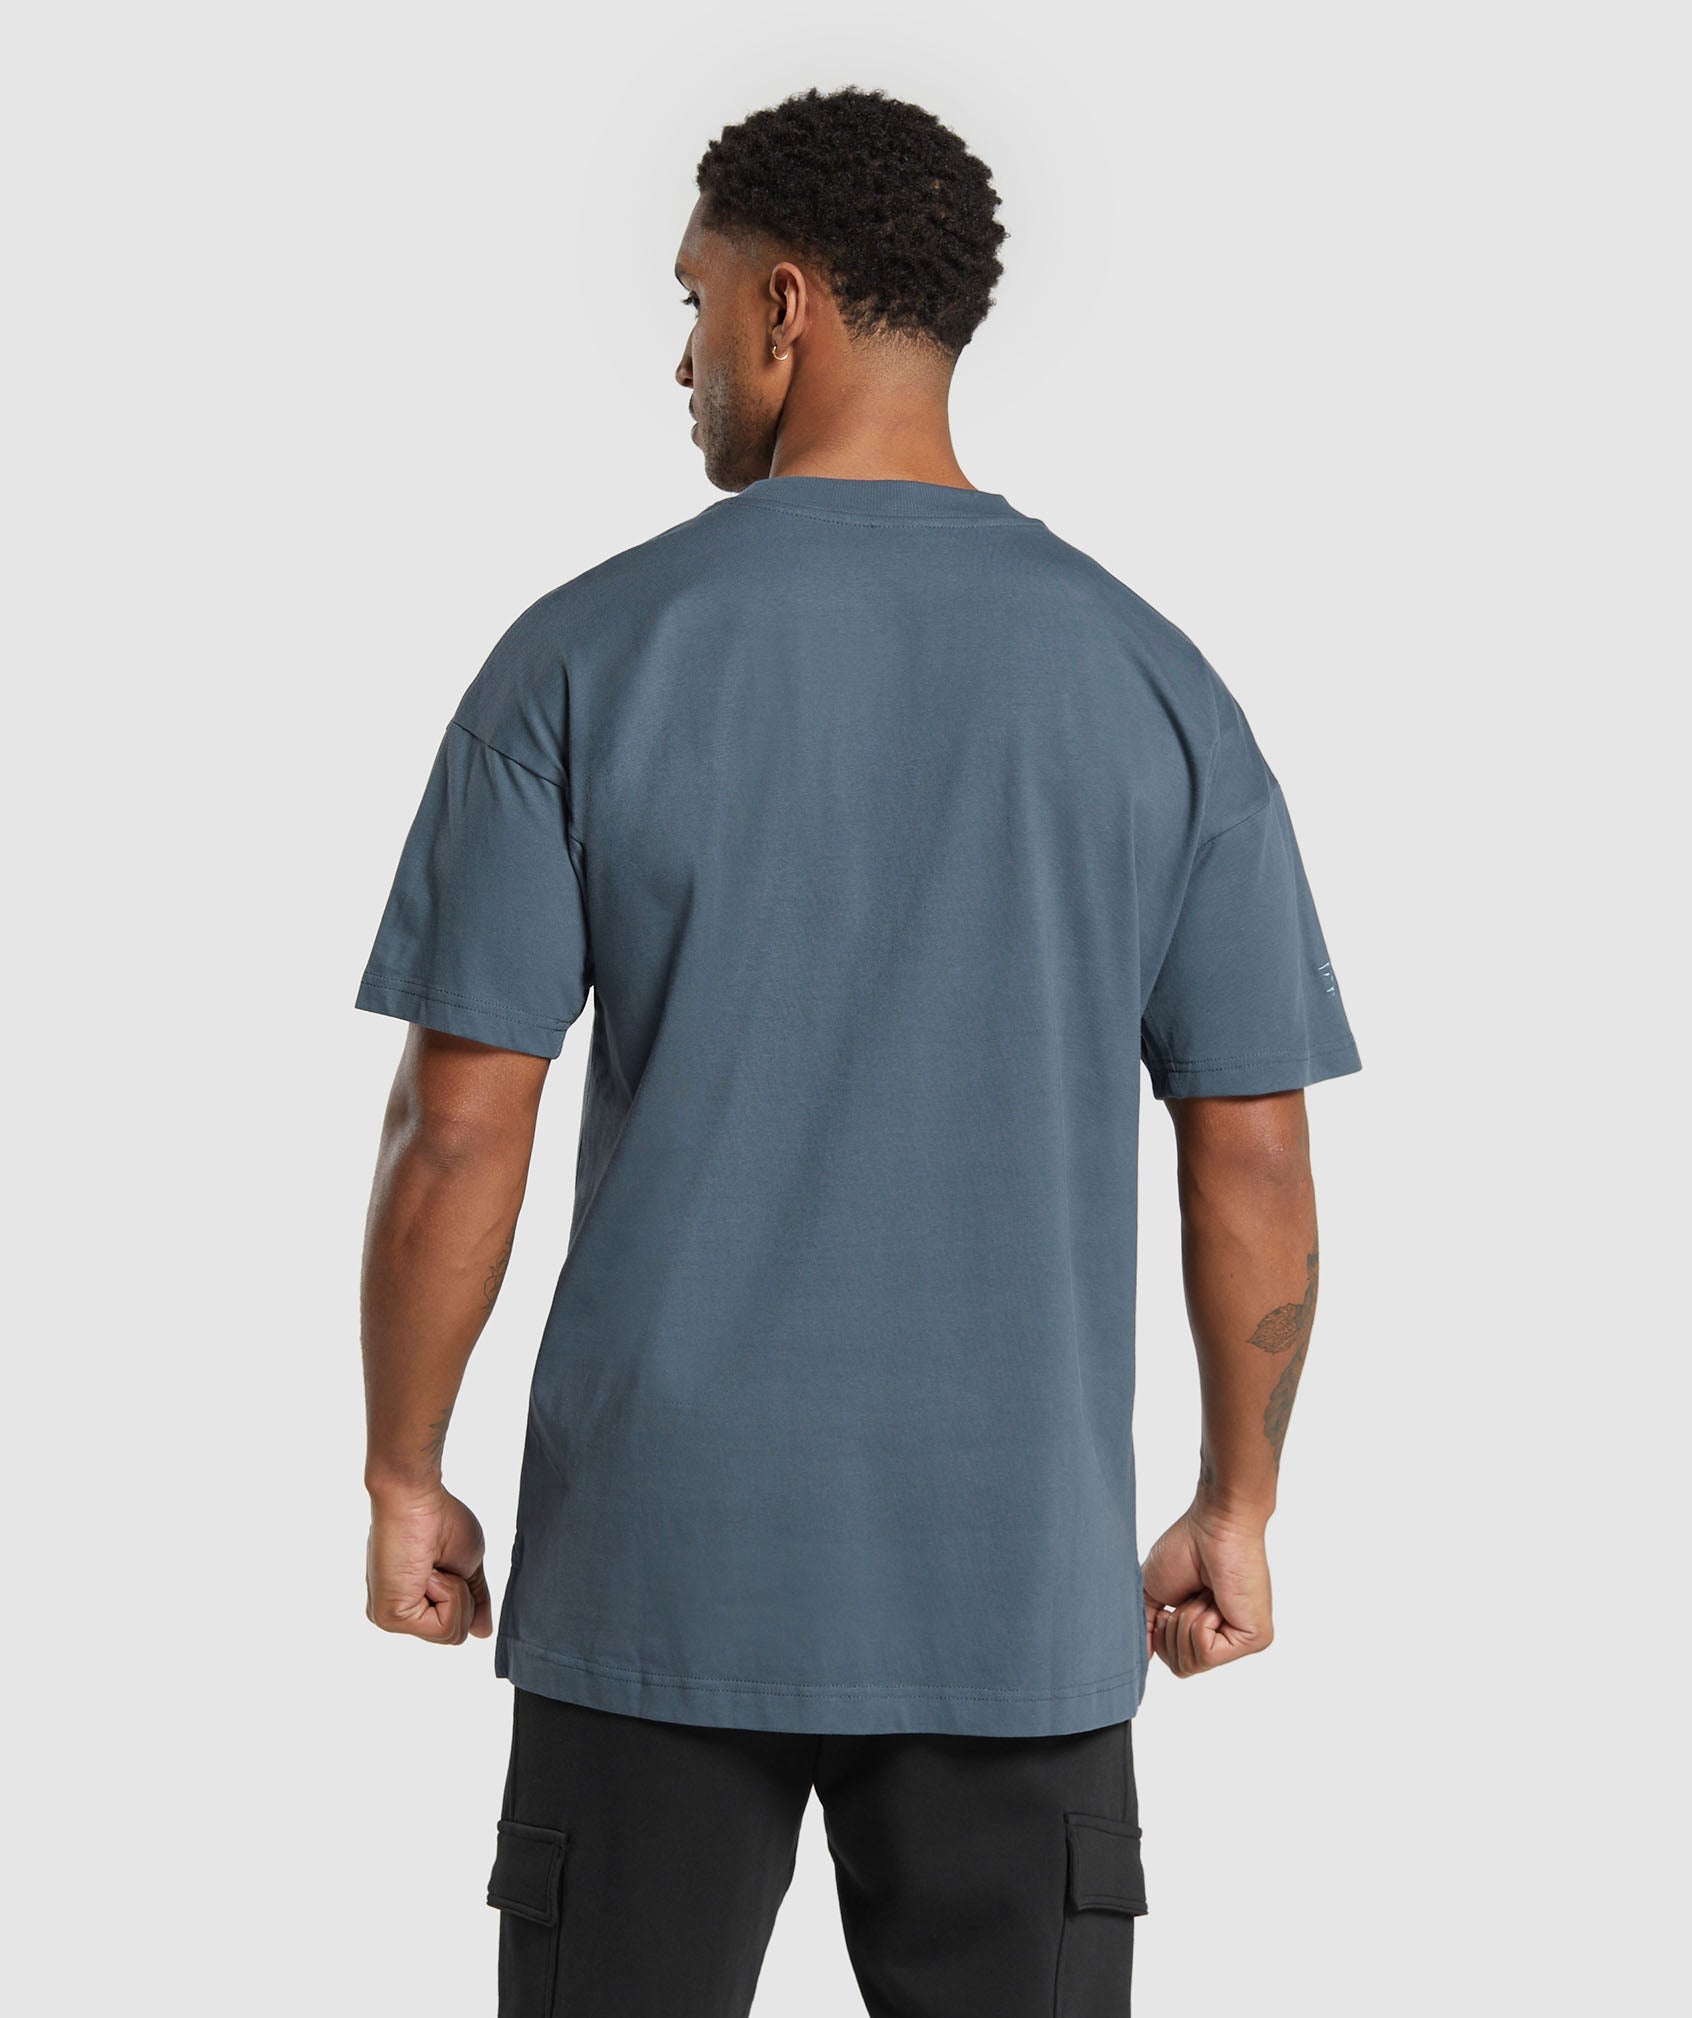 Rest Day Essentials T-Shirt in Titanium Blue - view 2